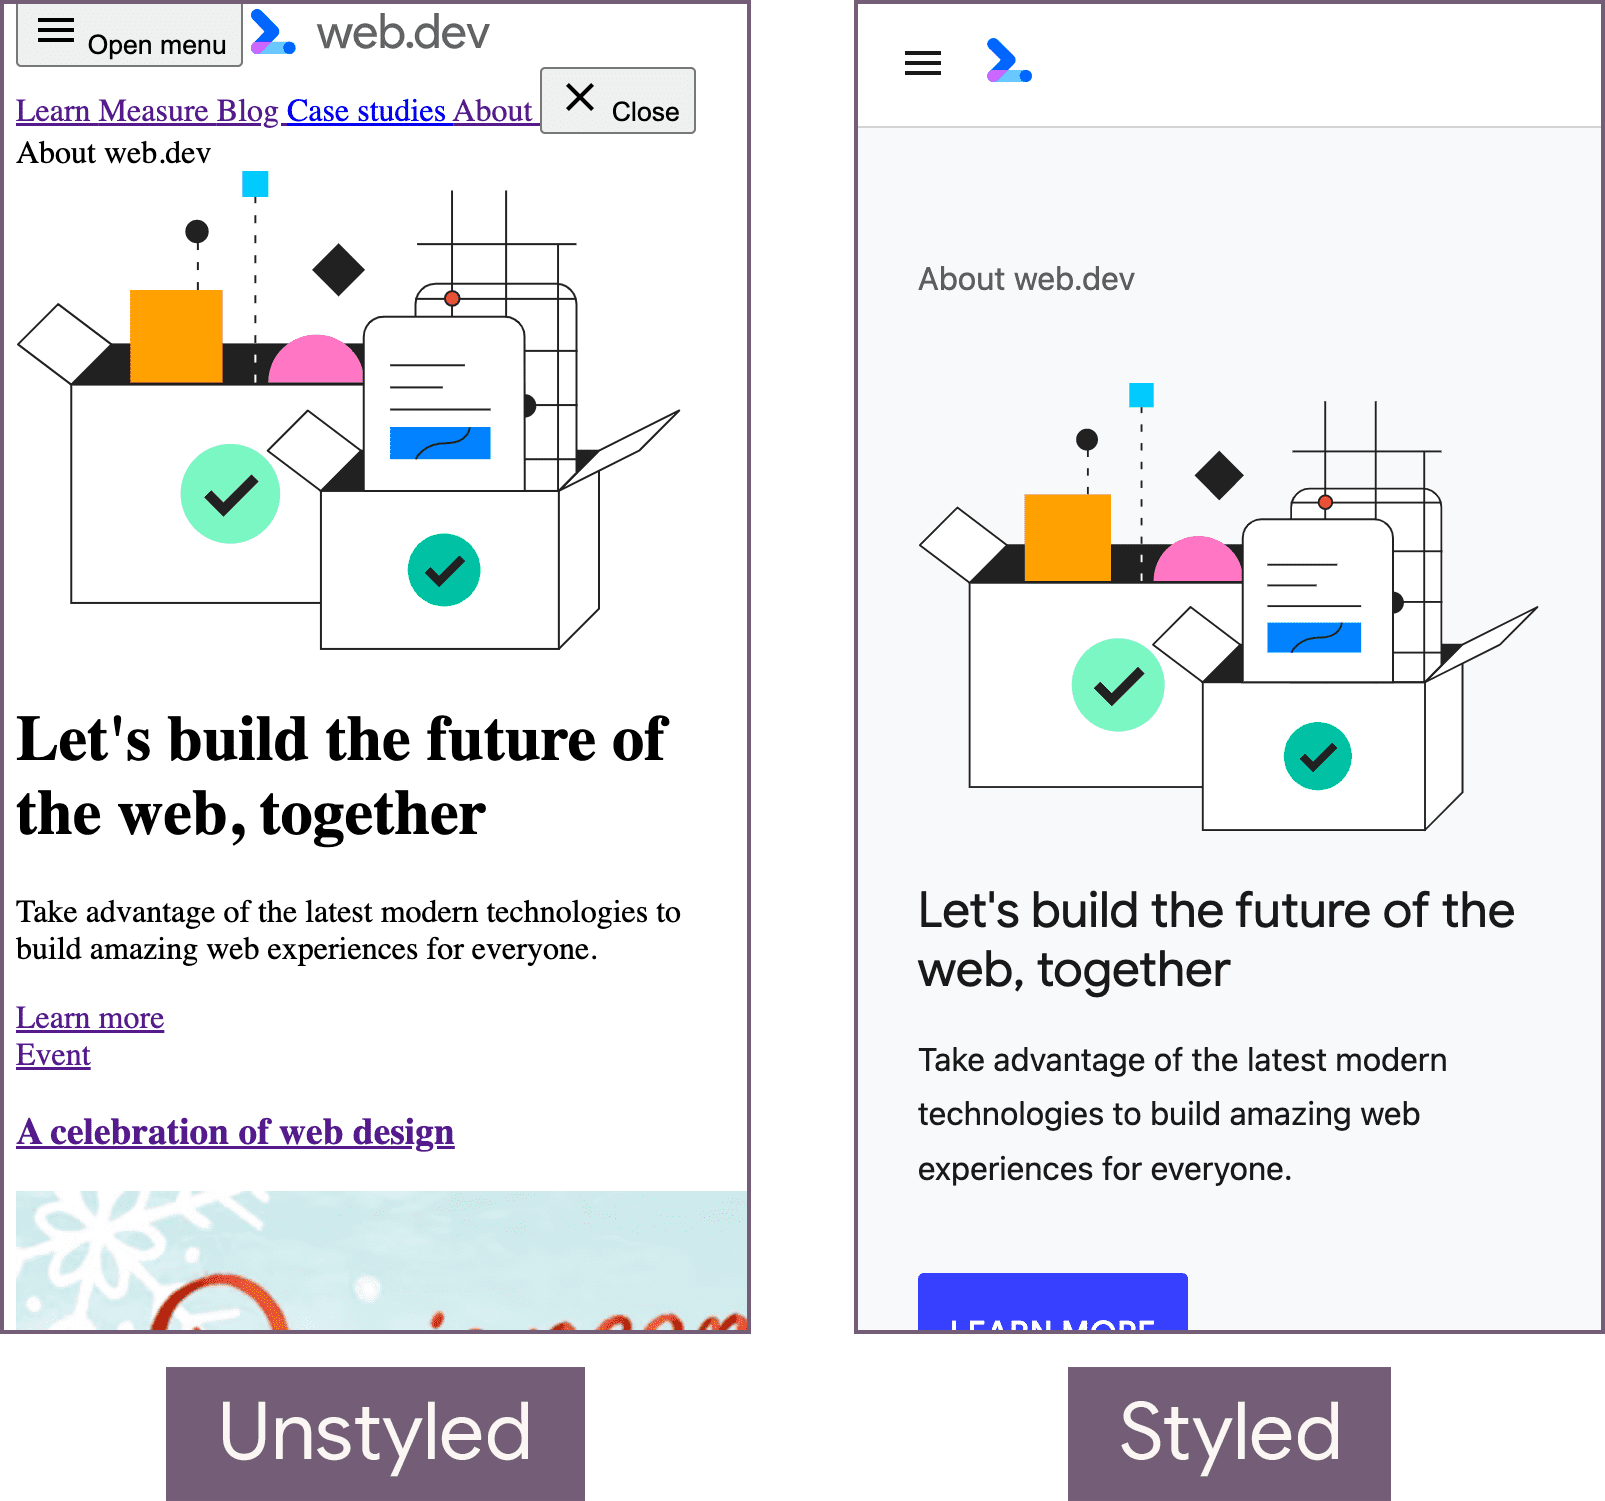 หน้าแรกของ web.dev ในสถานะที่ไม่มีการจัดรูปแบบ (ซ้าย) และมีสถานะจัดรูปแบบ (ขวา)